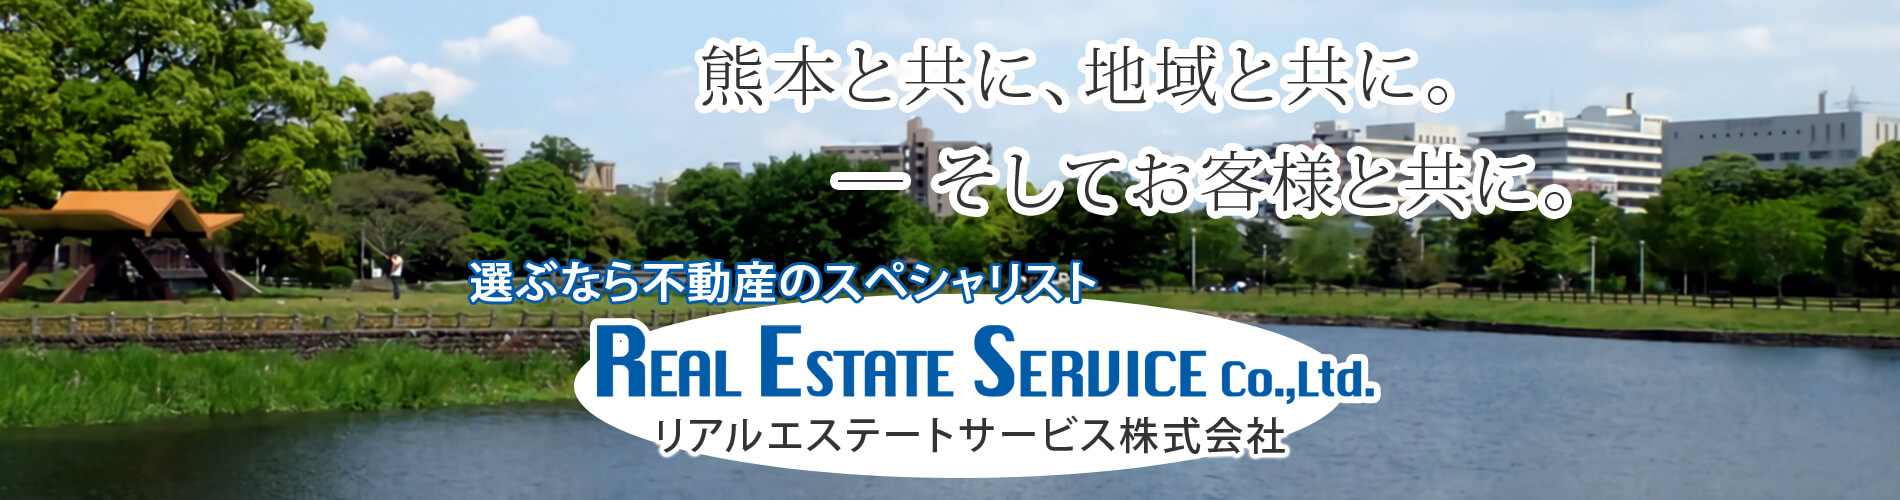 RES | RealEstateService Co., Ltd